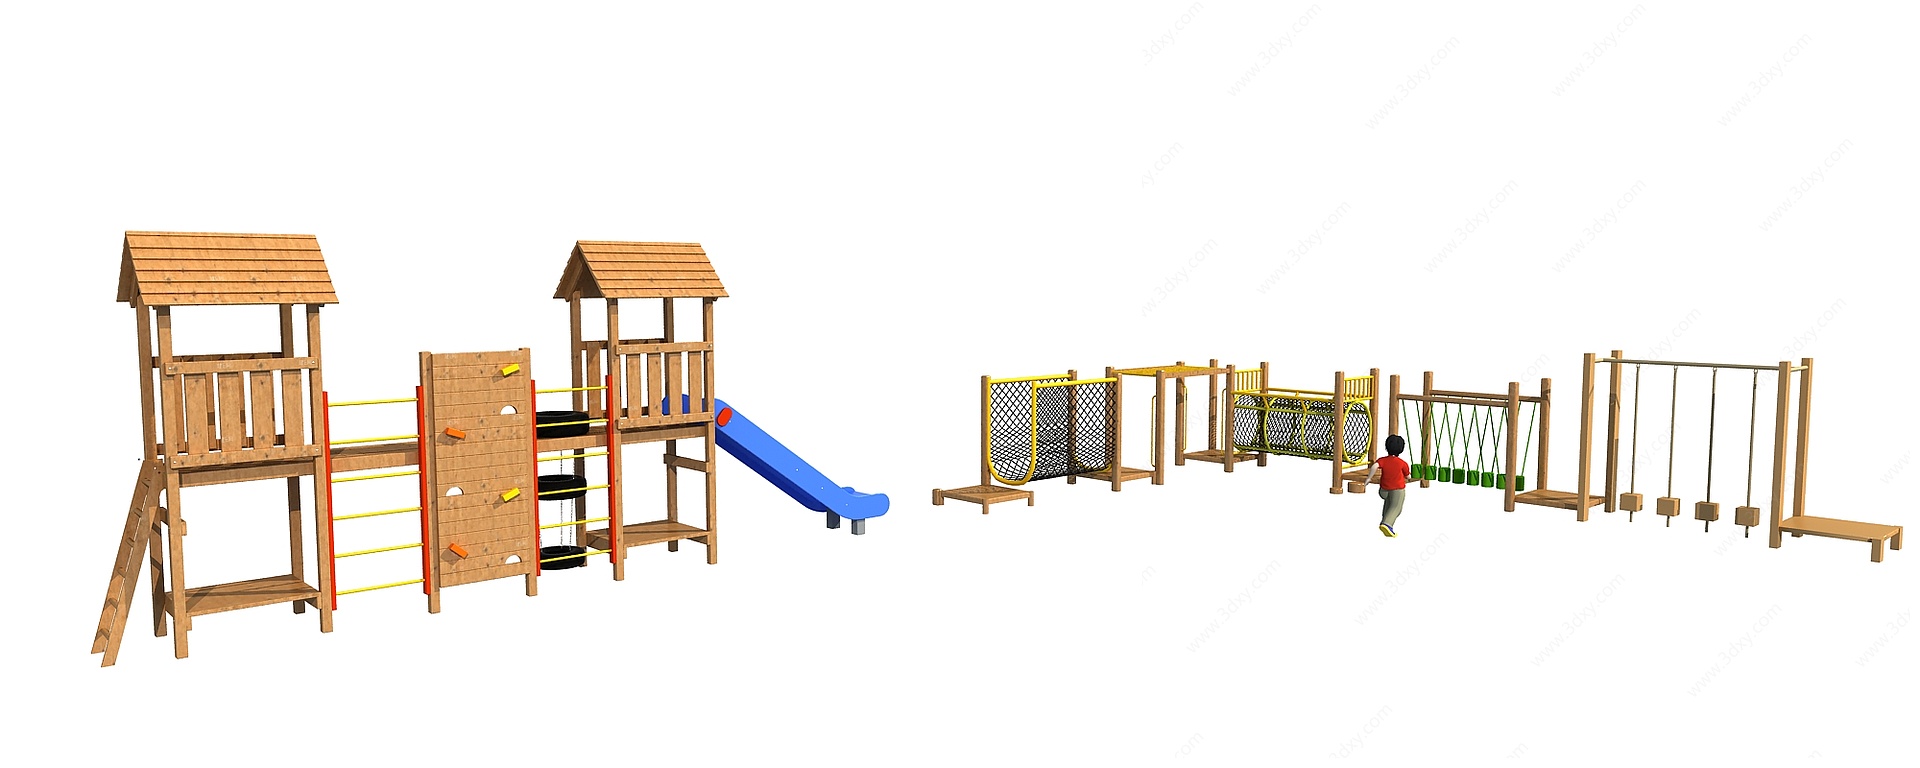 户外木制滑梯儿童游乐设施3D模型